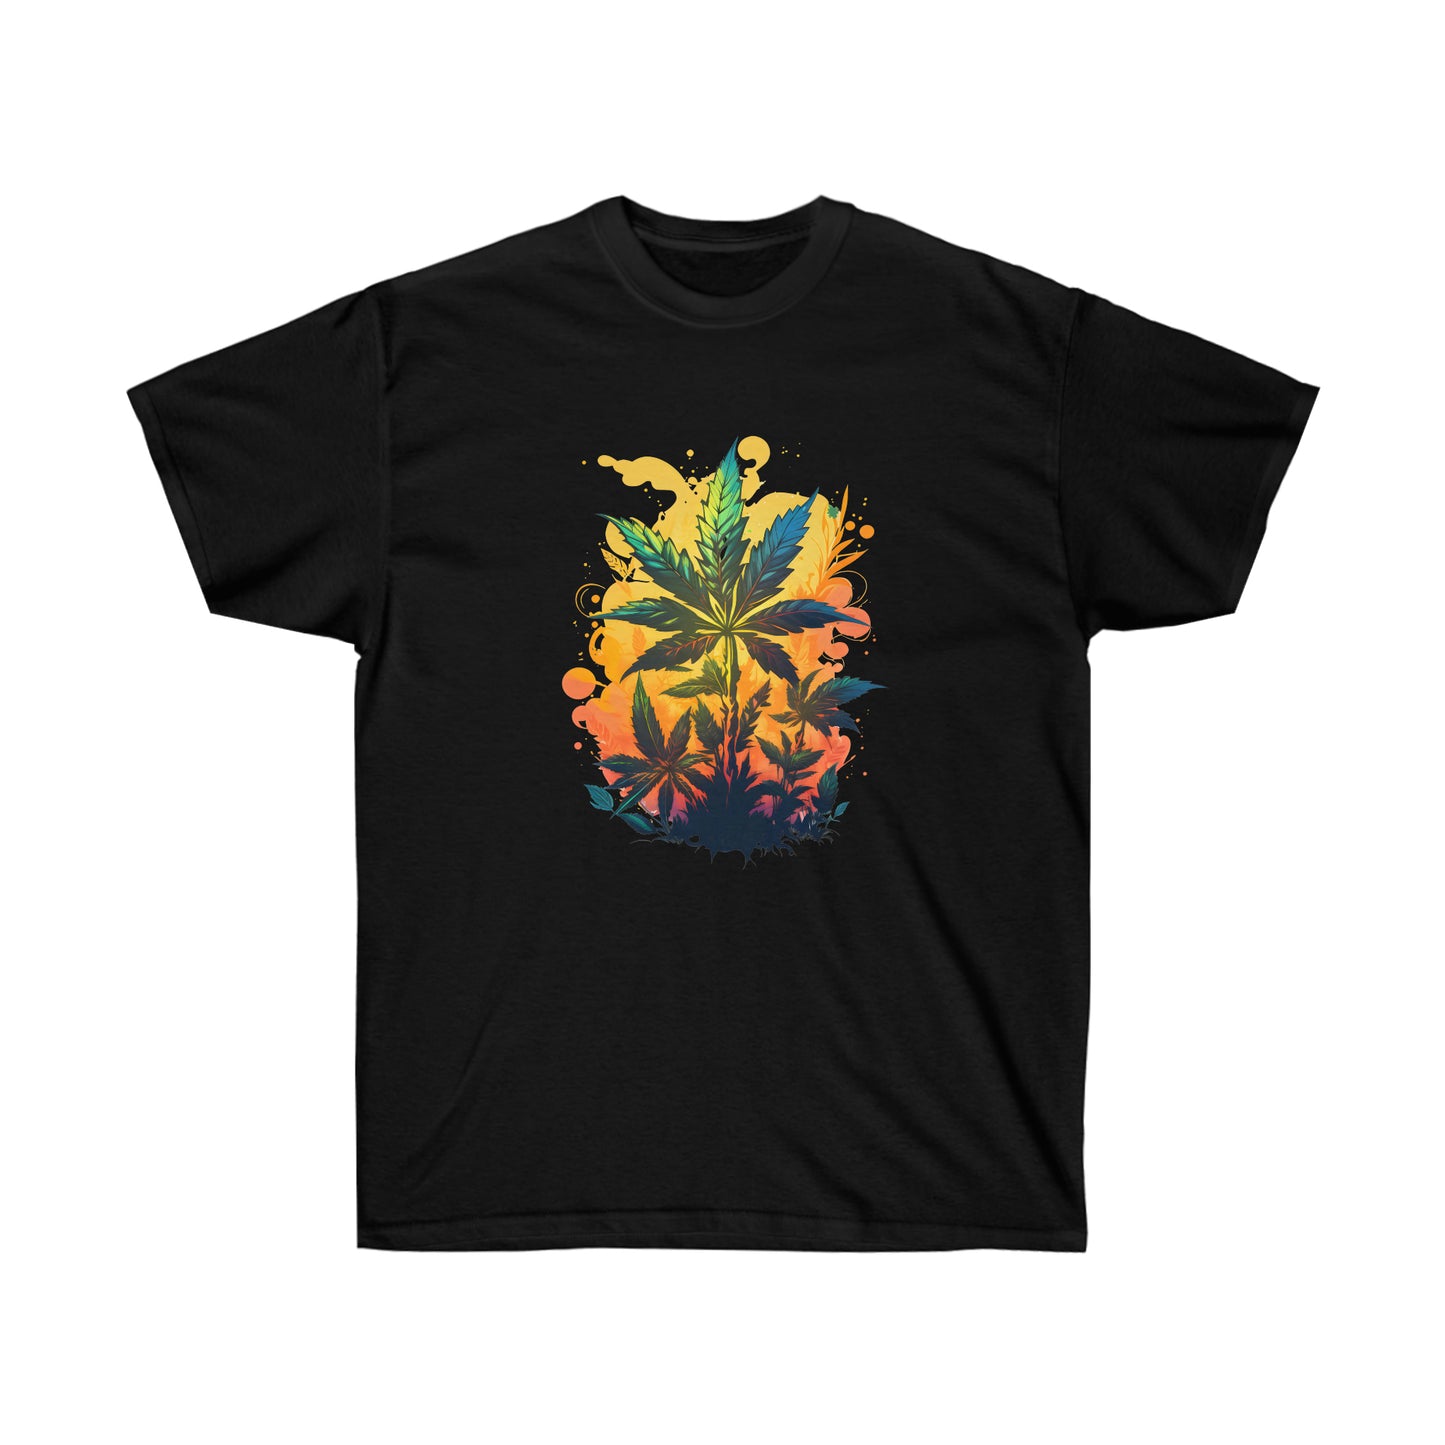 A black, warm paradise cannabis t-shirt